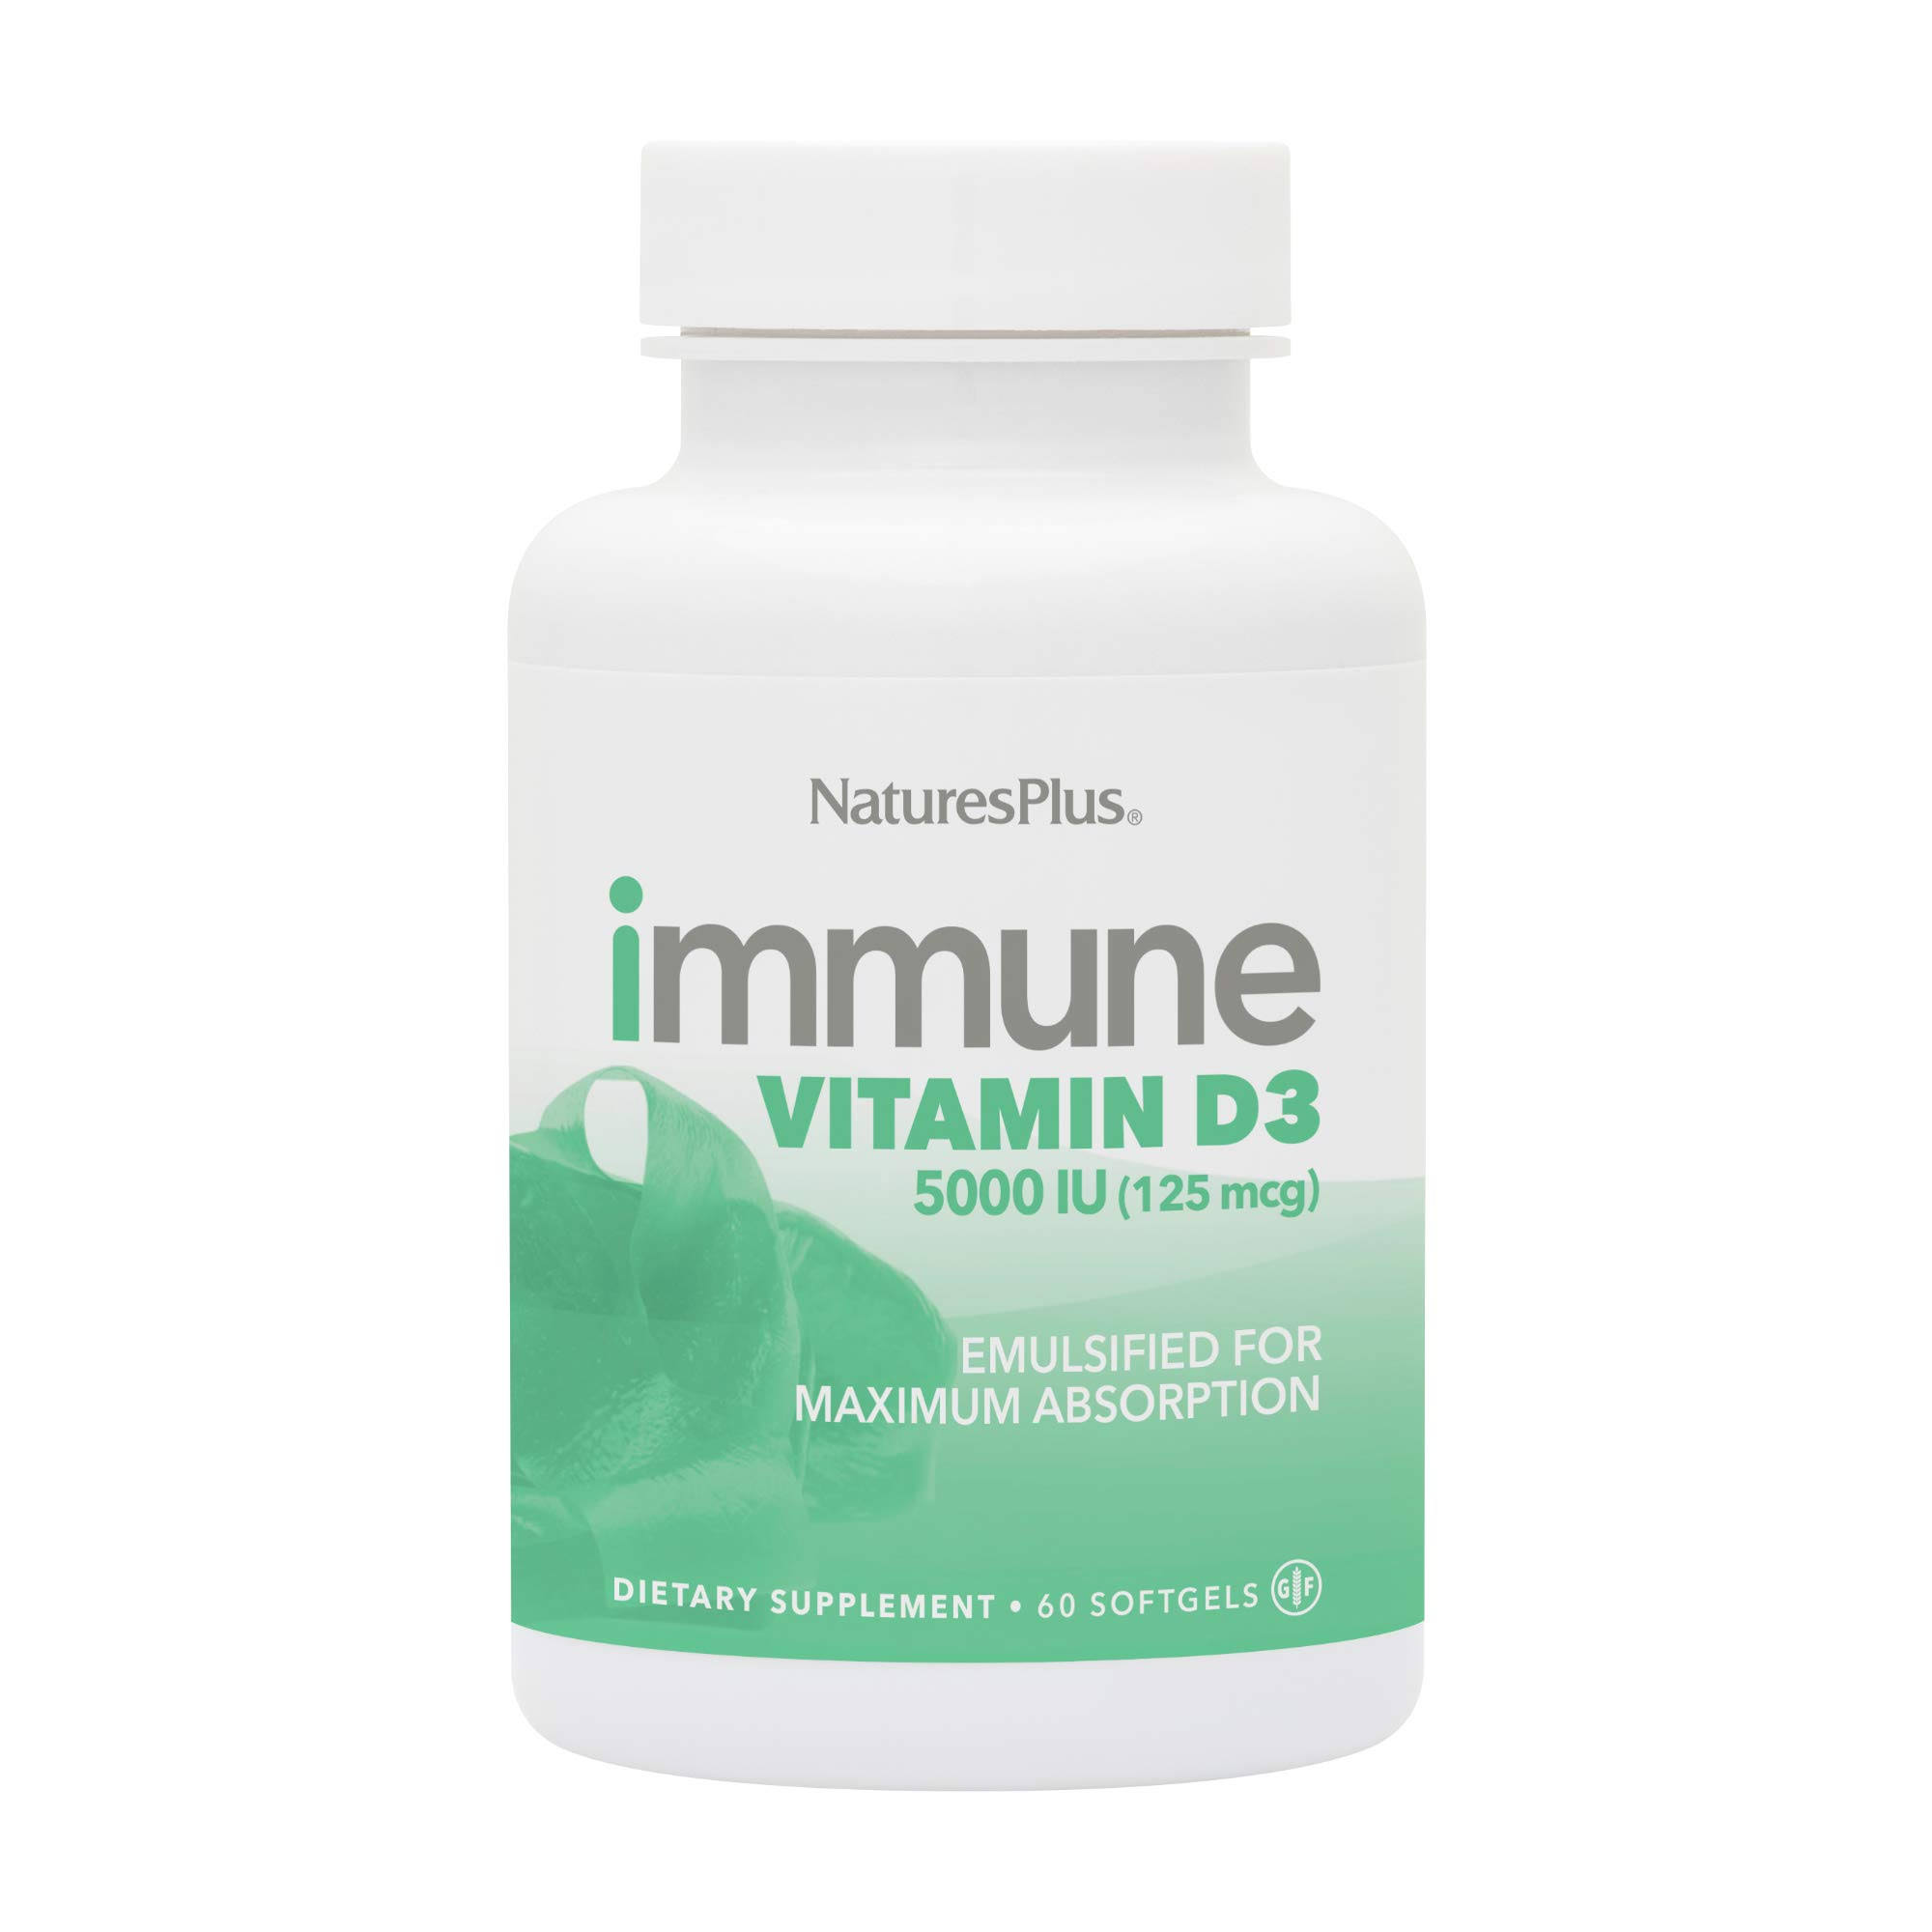 Nature's Plus, Immune Vitamin D3, 125 mcg (5,000 IU), 60 Softgels